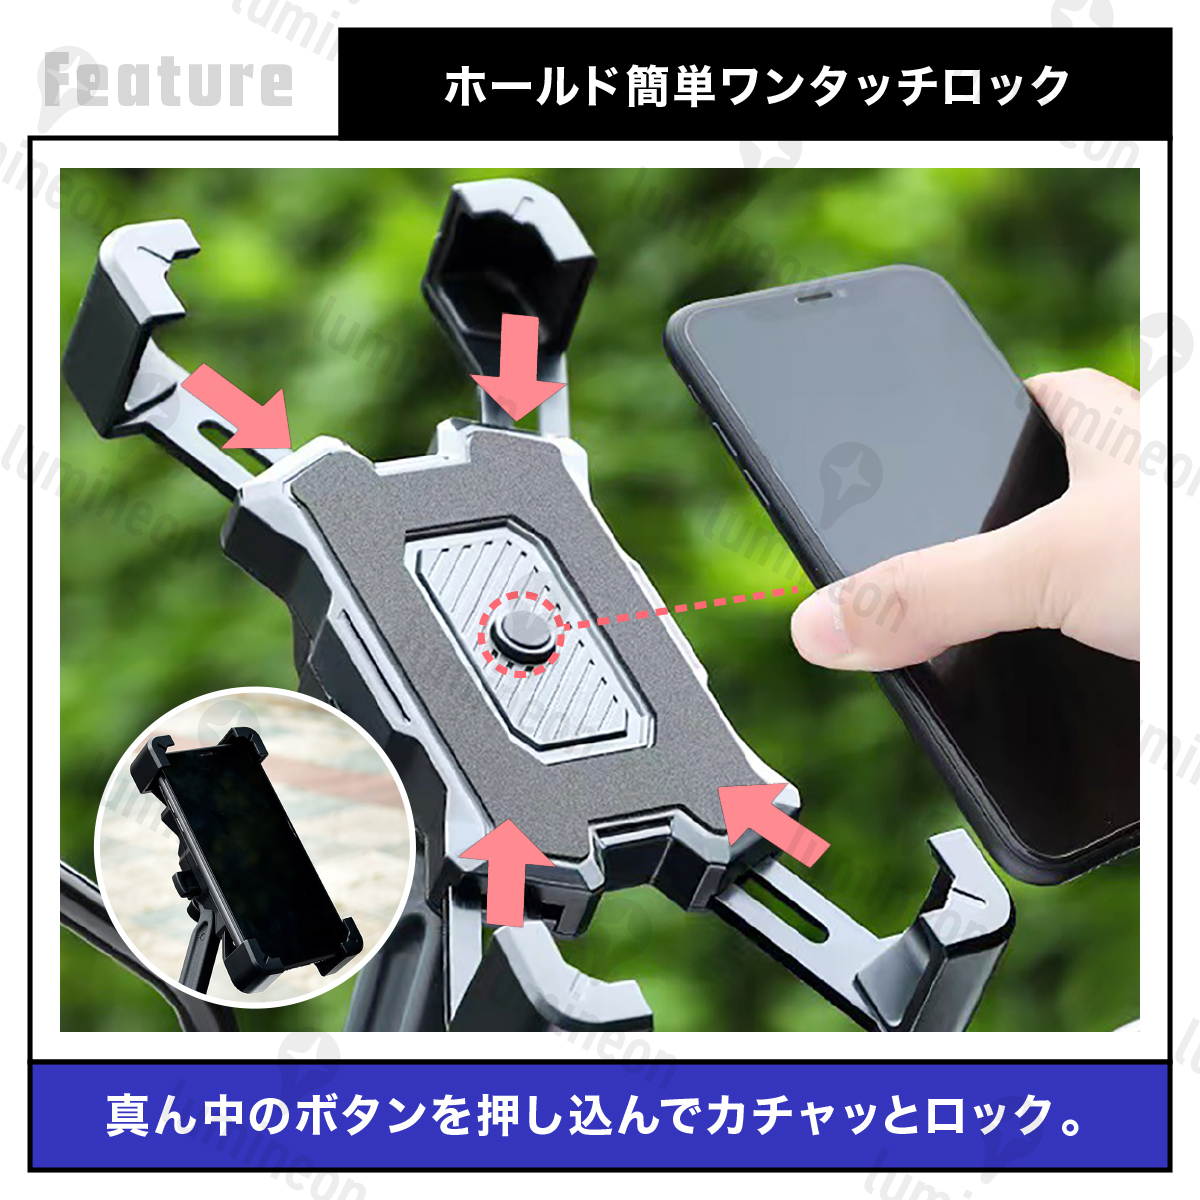 スマホ ホルダー 携帯 バイク用 自転車用 自動ロック 360度 iPhone ナビ 固定 回転 横置き 横向き マウント 挟む おしゃれ g095 3_画像2